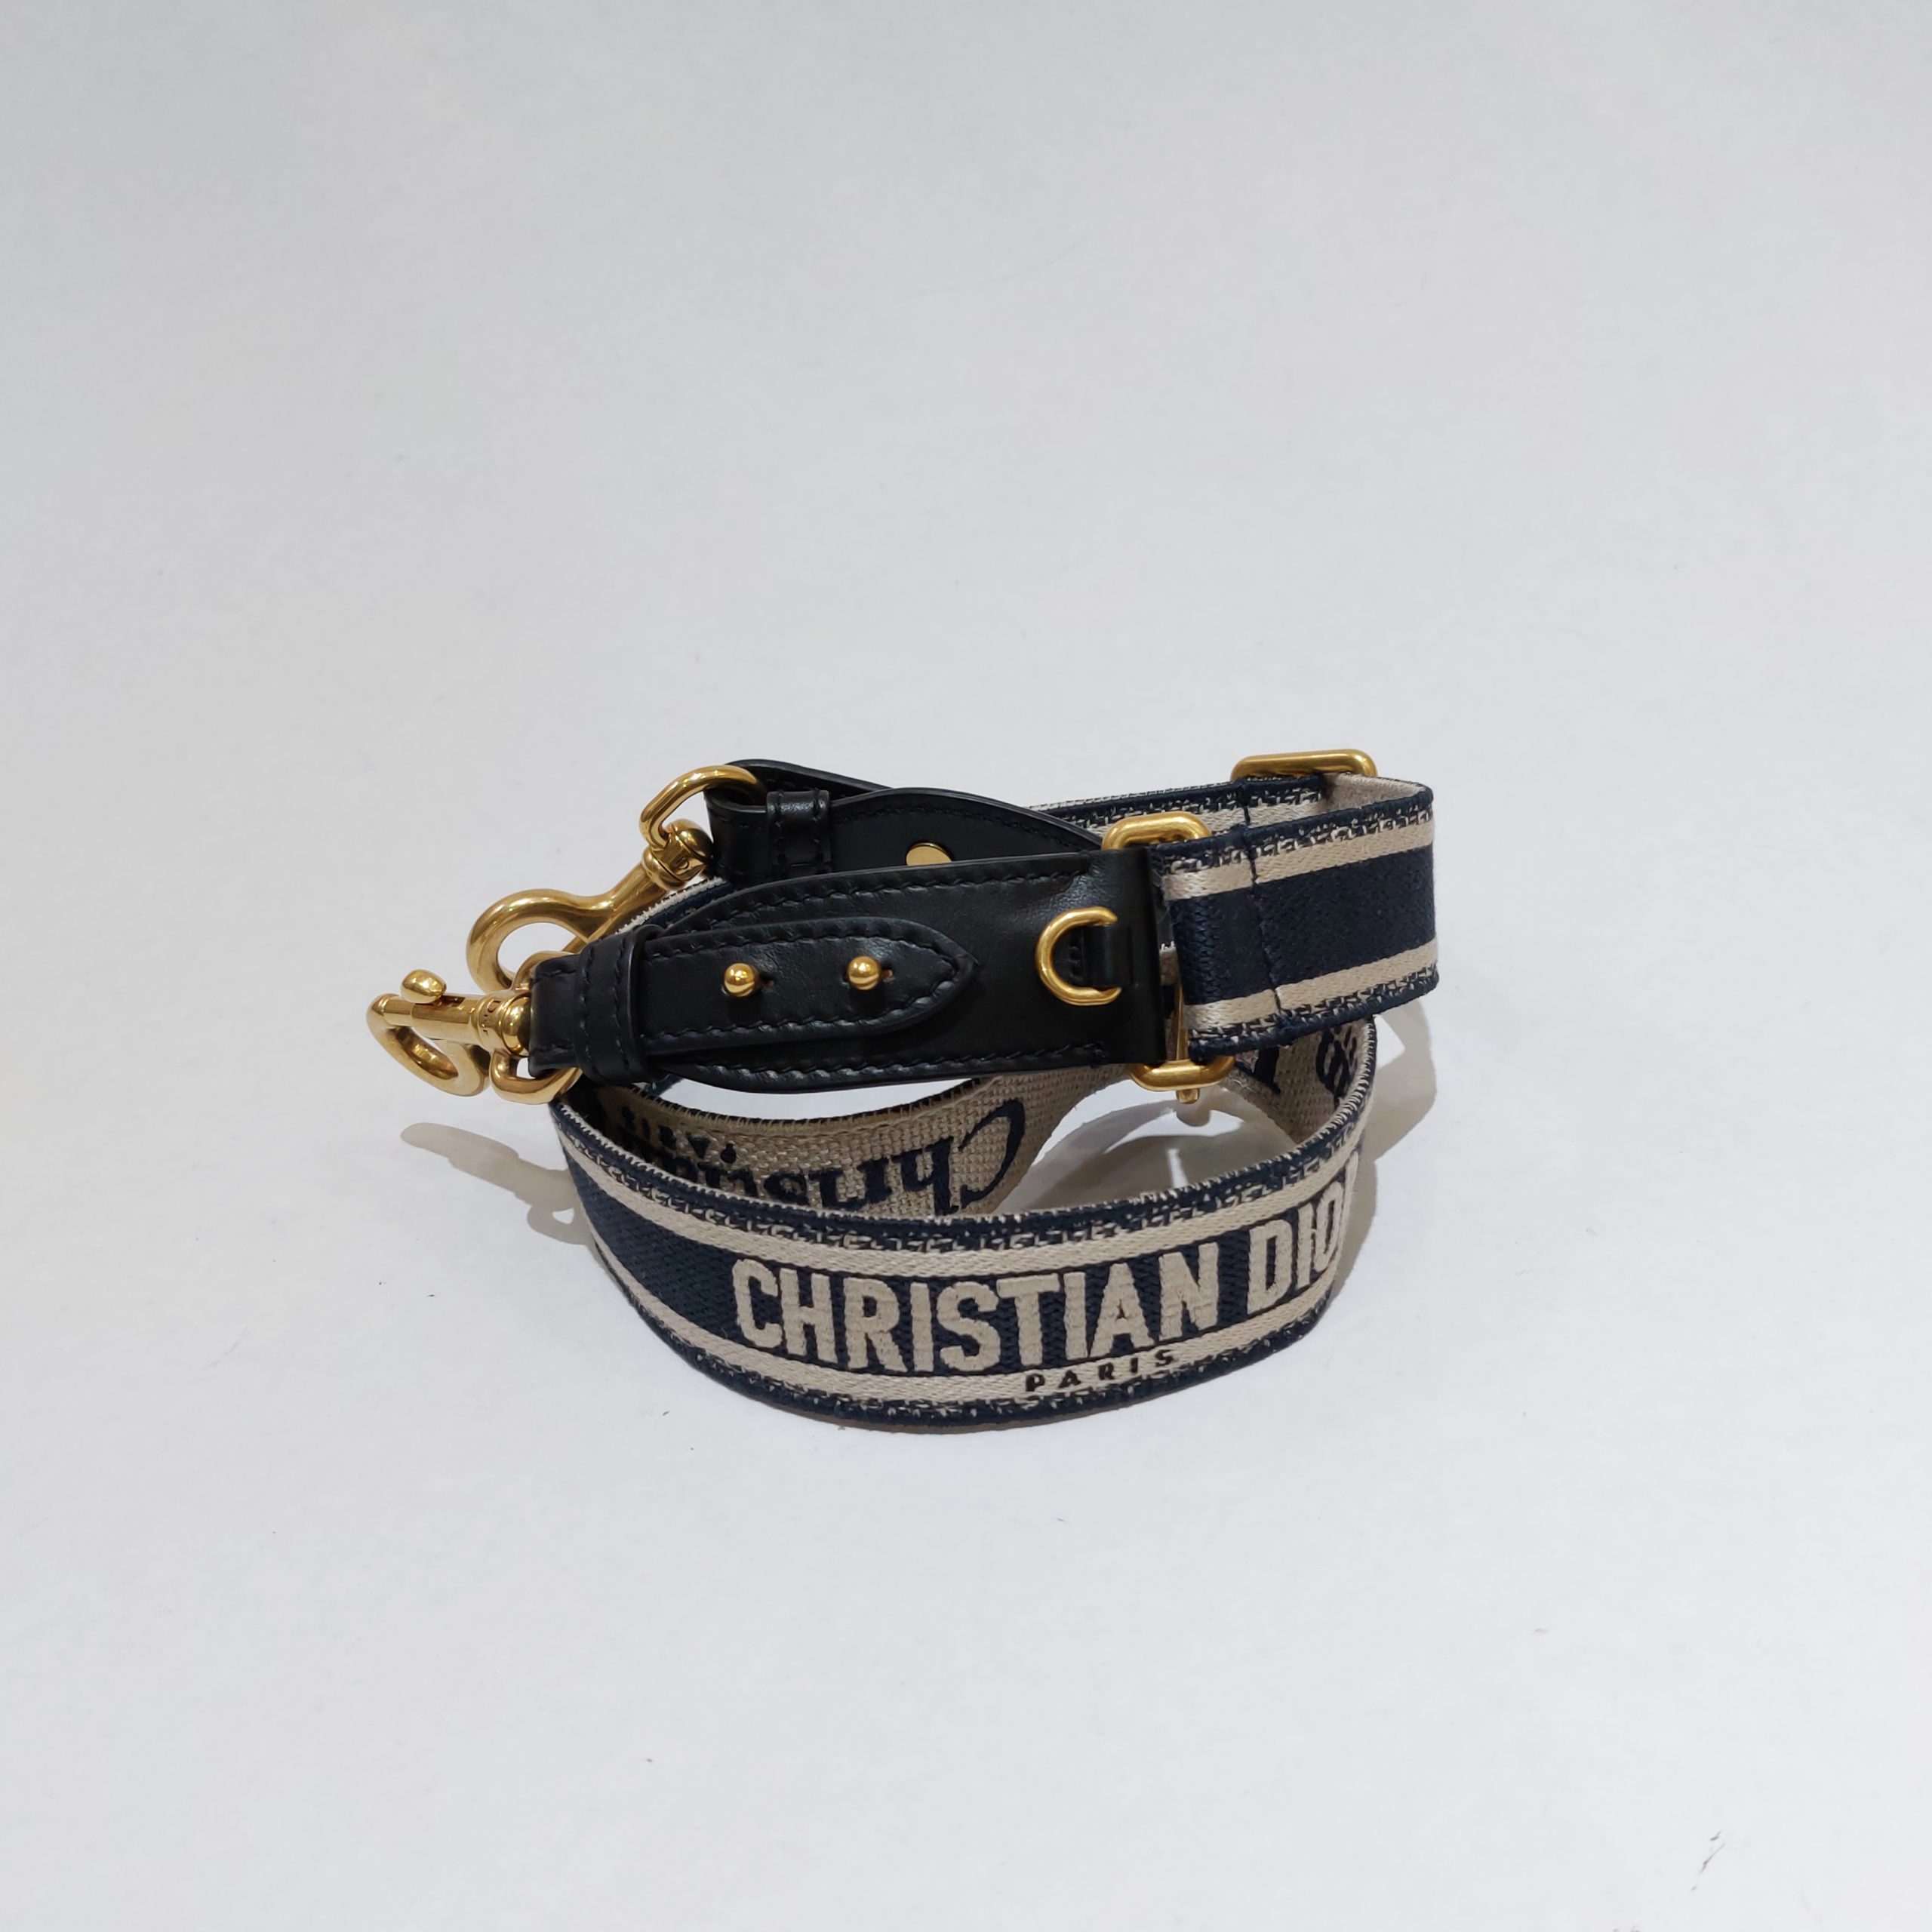 Dior Adjustable Shoulder Strap with Ring